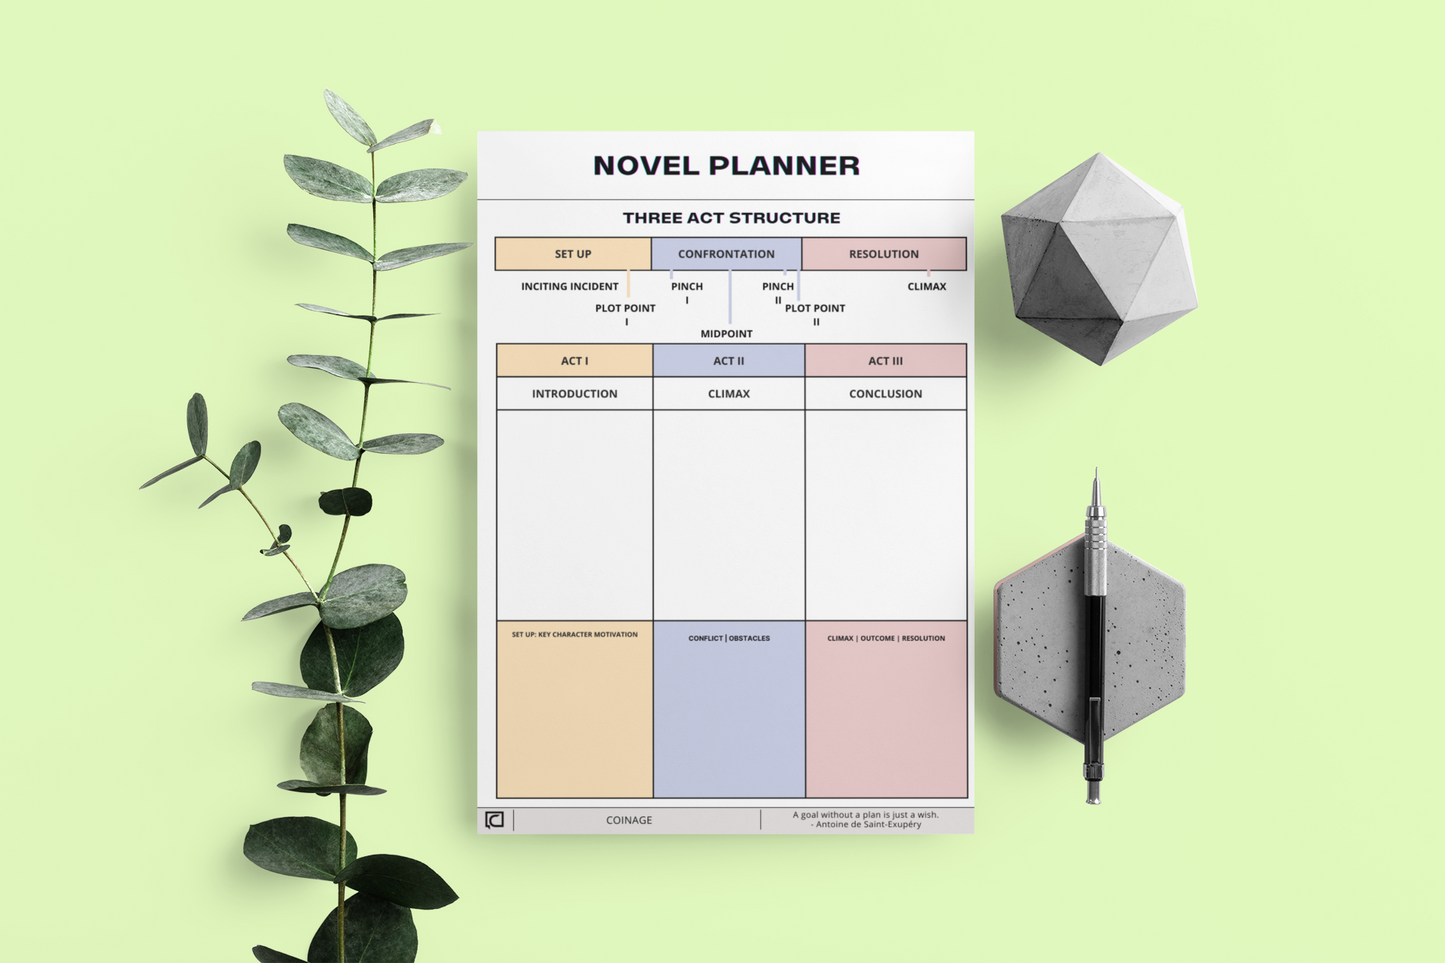 Novel Planner